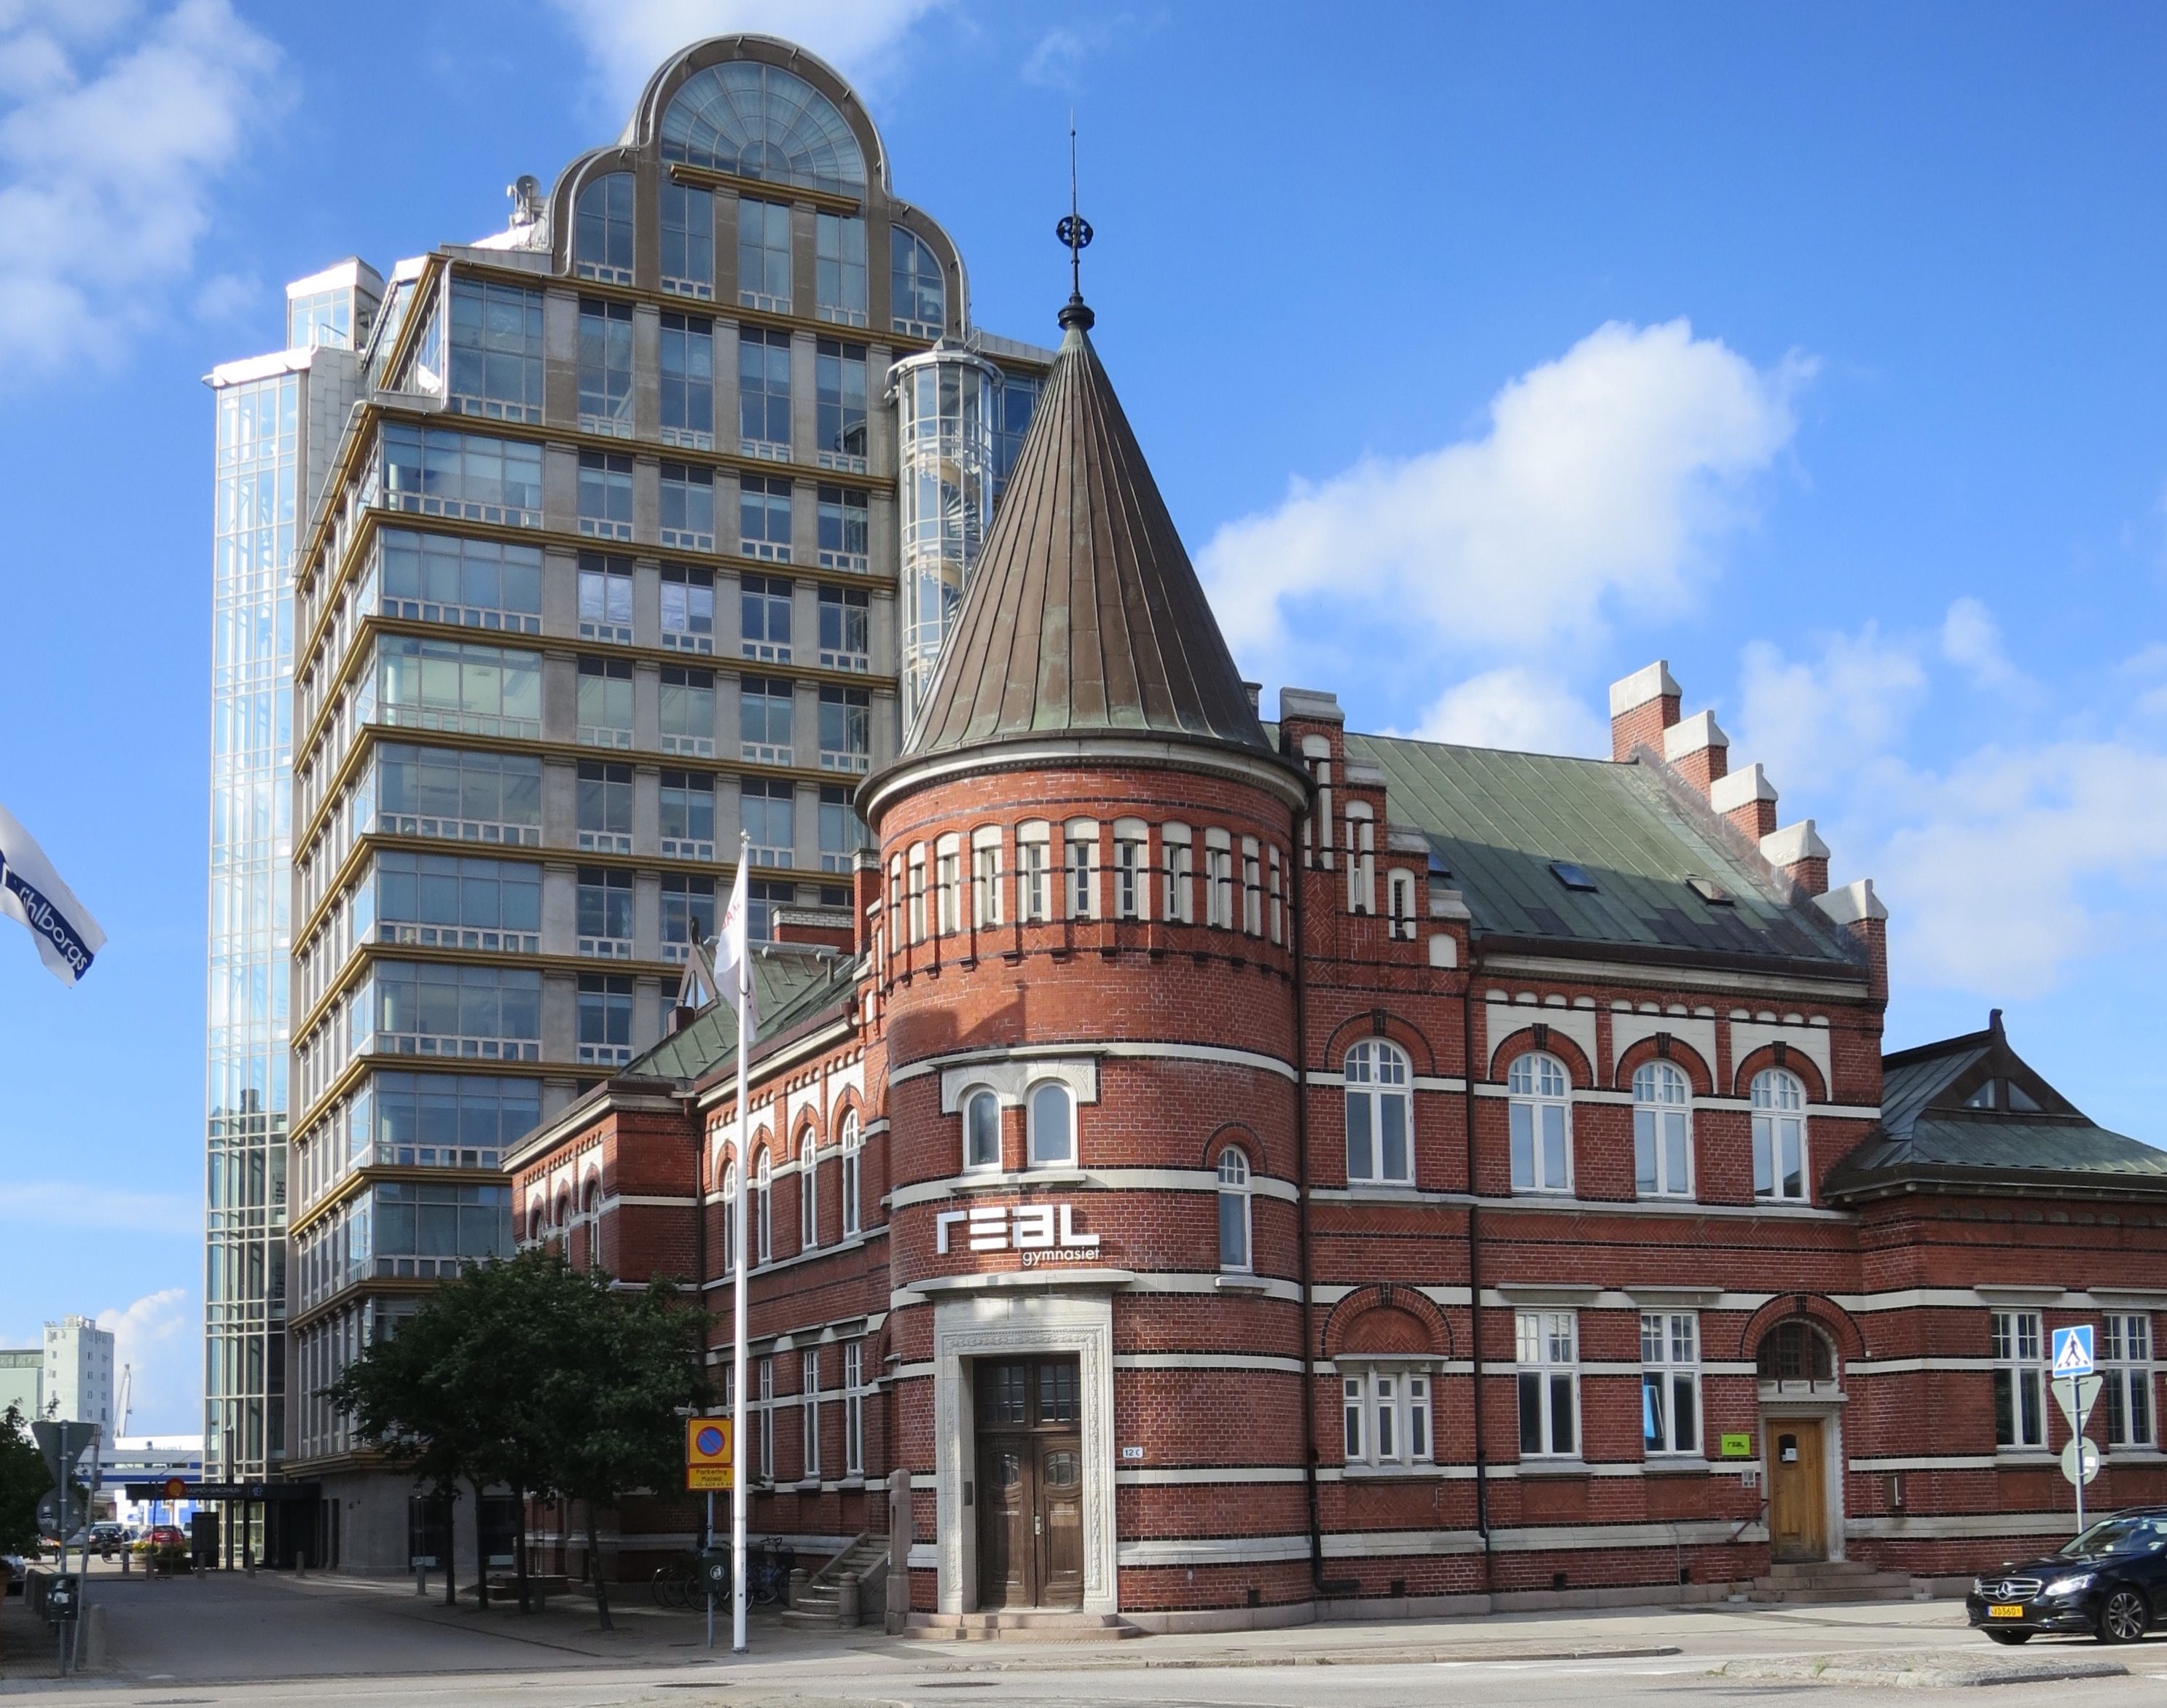 Slagthuset kontorshotell (i bakgrunden), Malmö.